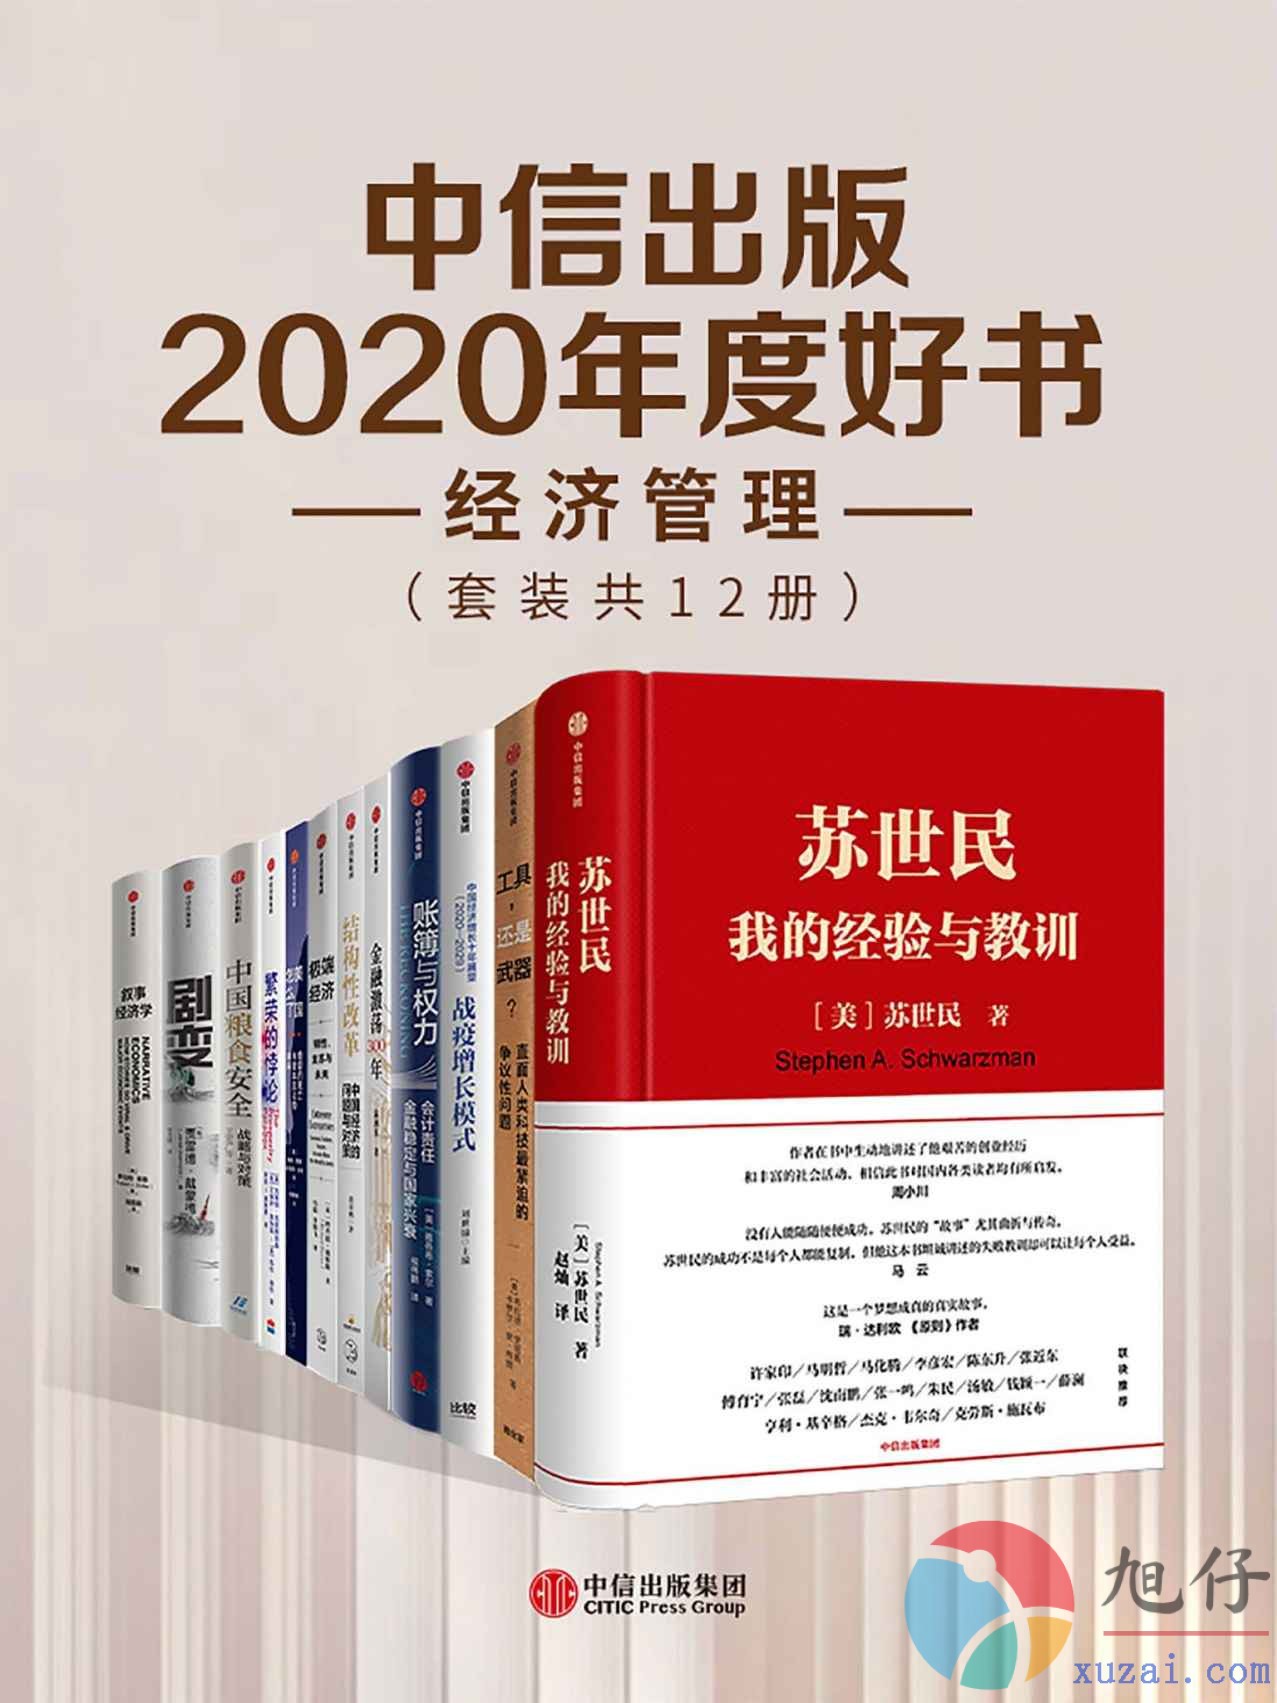 中信出版2020年度好书-经济管理【共12册】【epub格式】【49.5MB】【编号：307997】